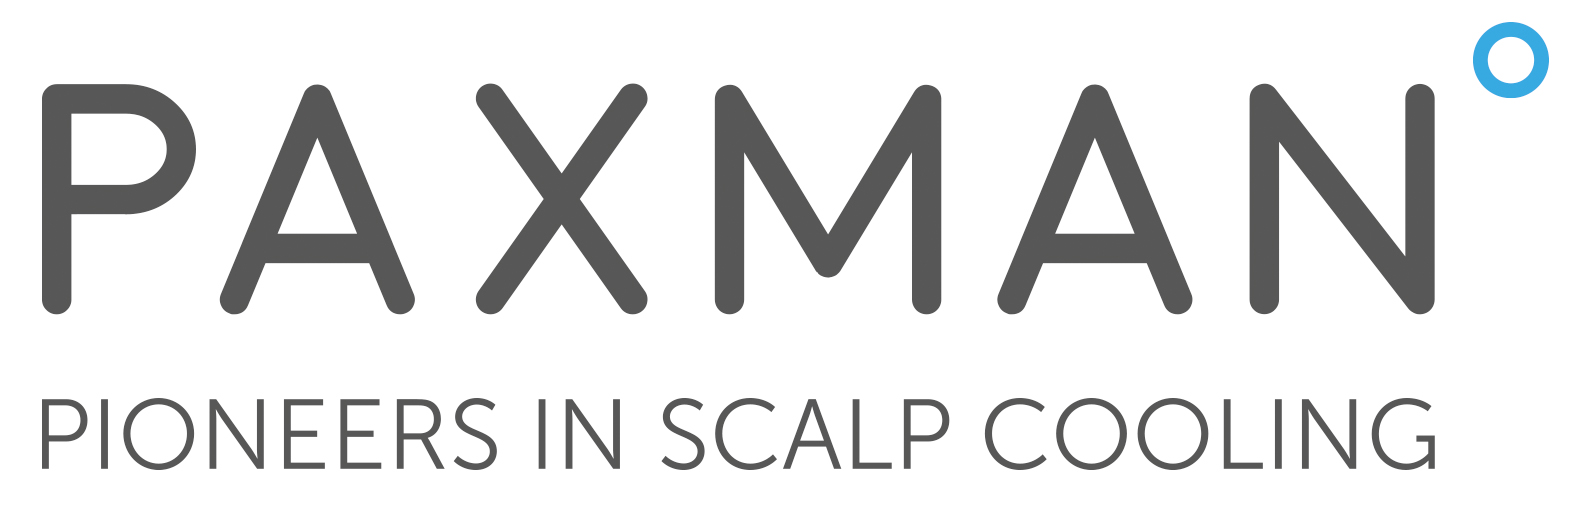 Paxman-logo-2